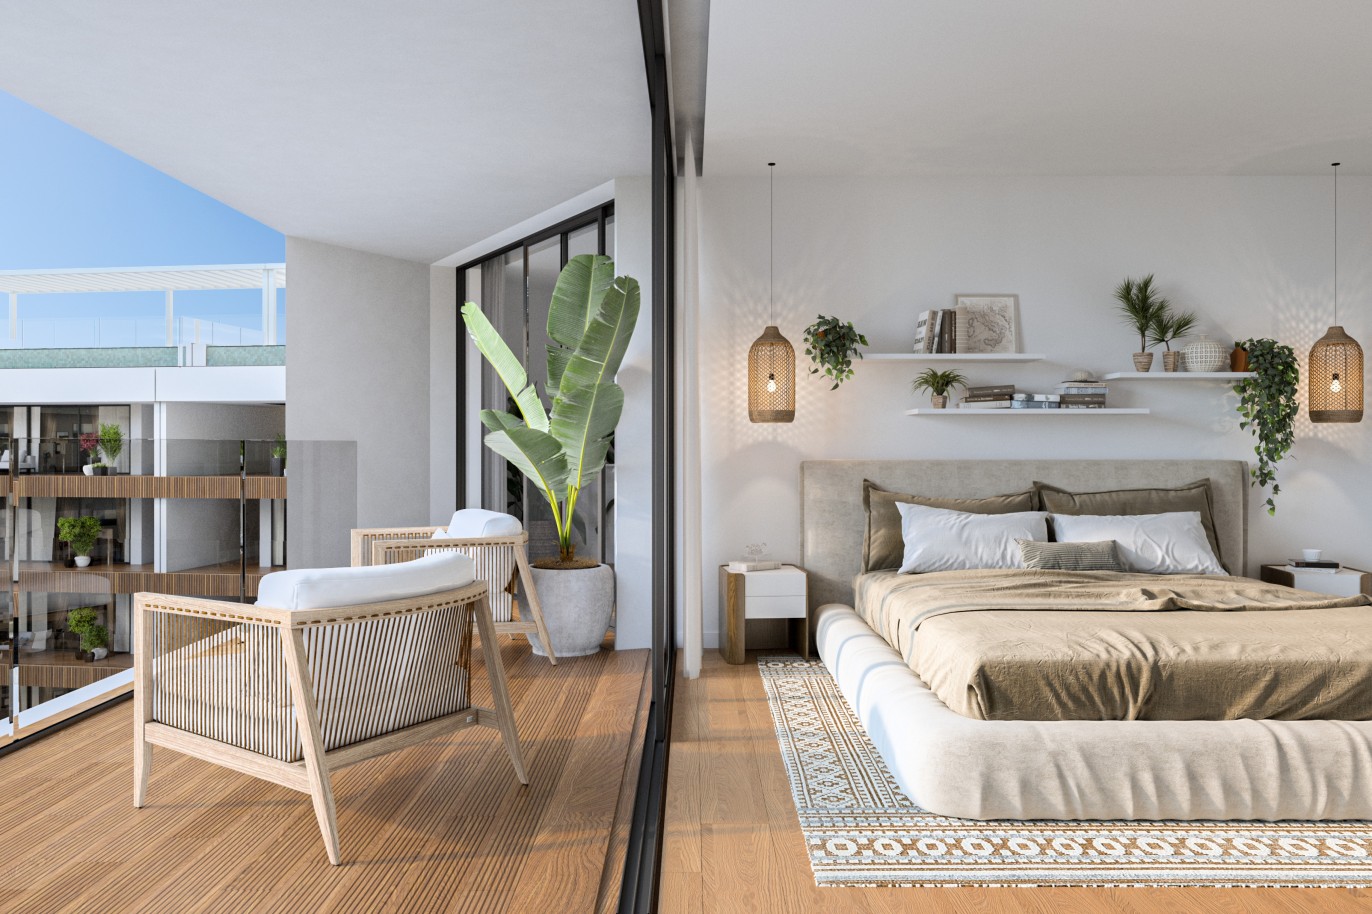 Appartements neufs avec vue sur mer, 1, 2 & 3 chambres, à vendre à Olhão, Algarve_243814